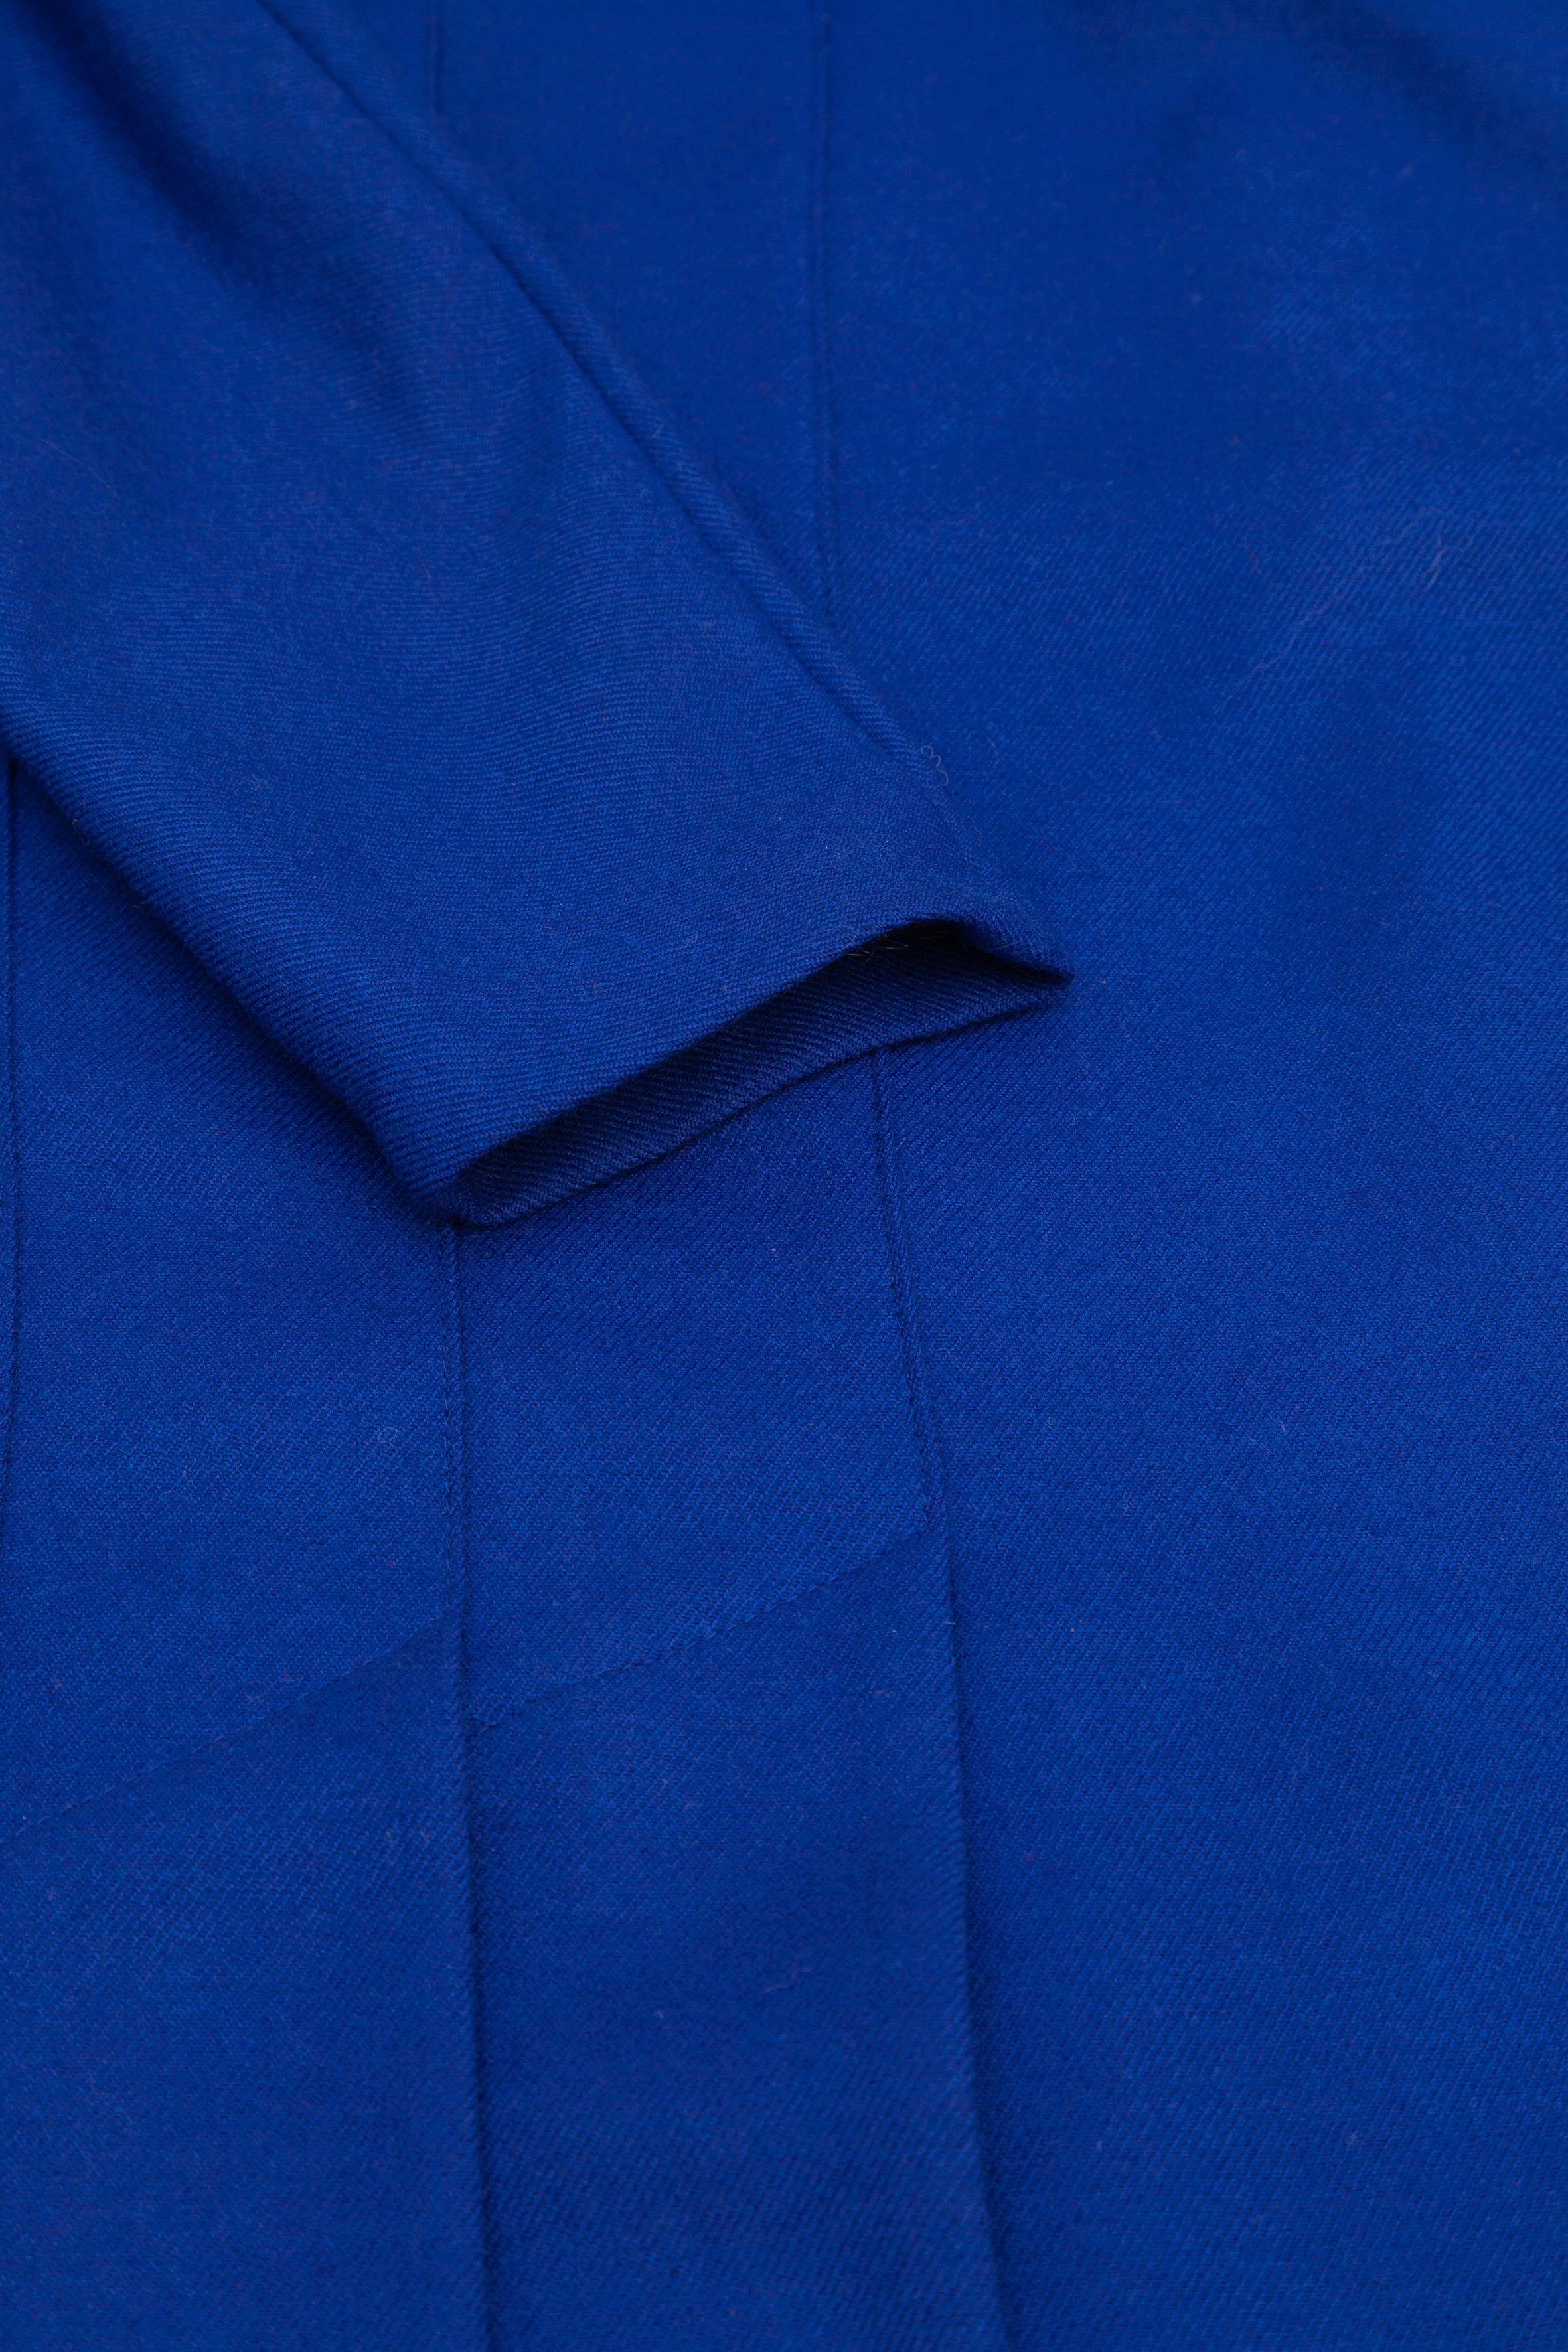 Blue Coat Dress designed by Hesselhoj, Denmark For Sale 2